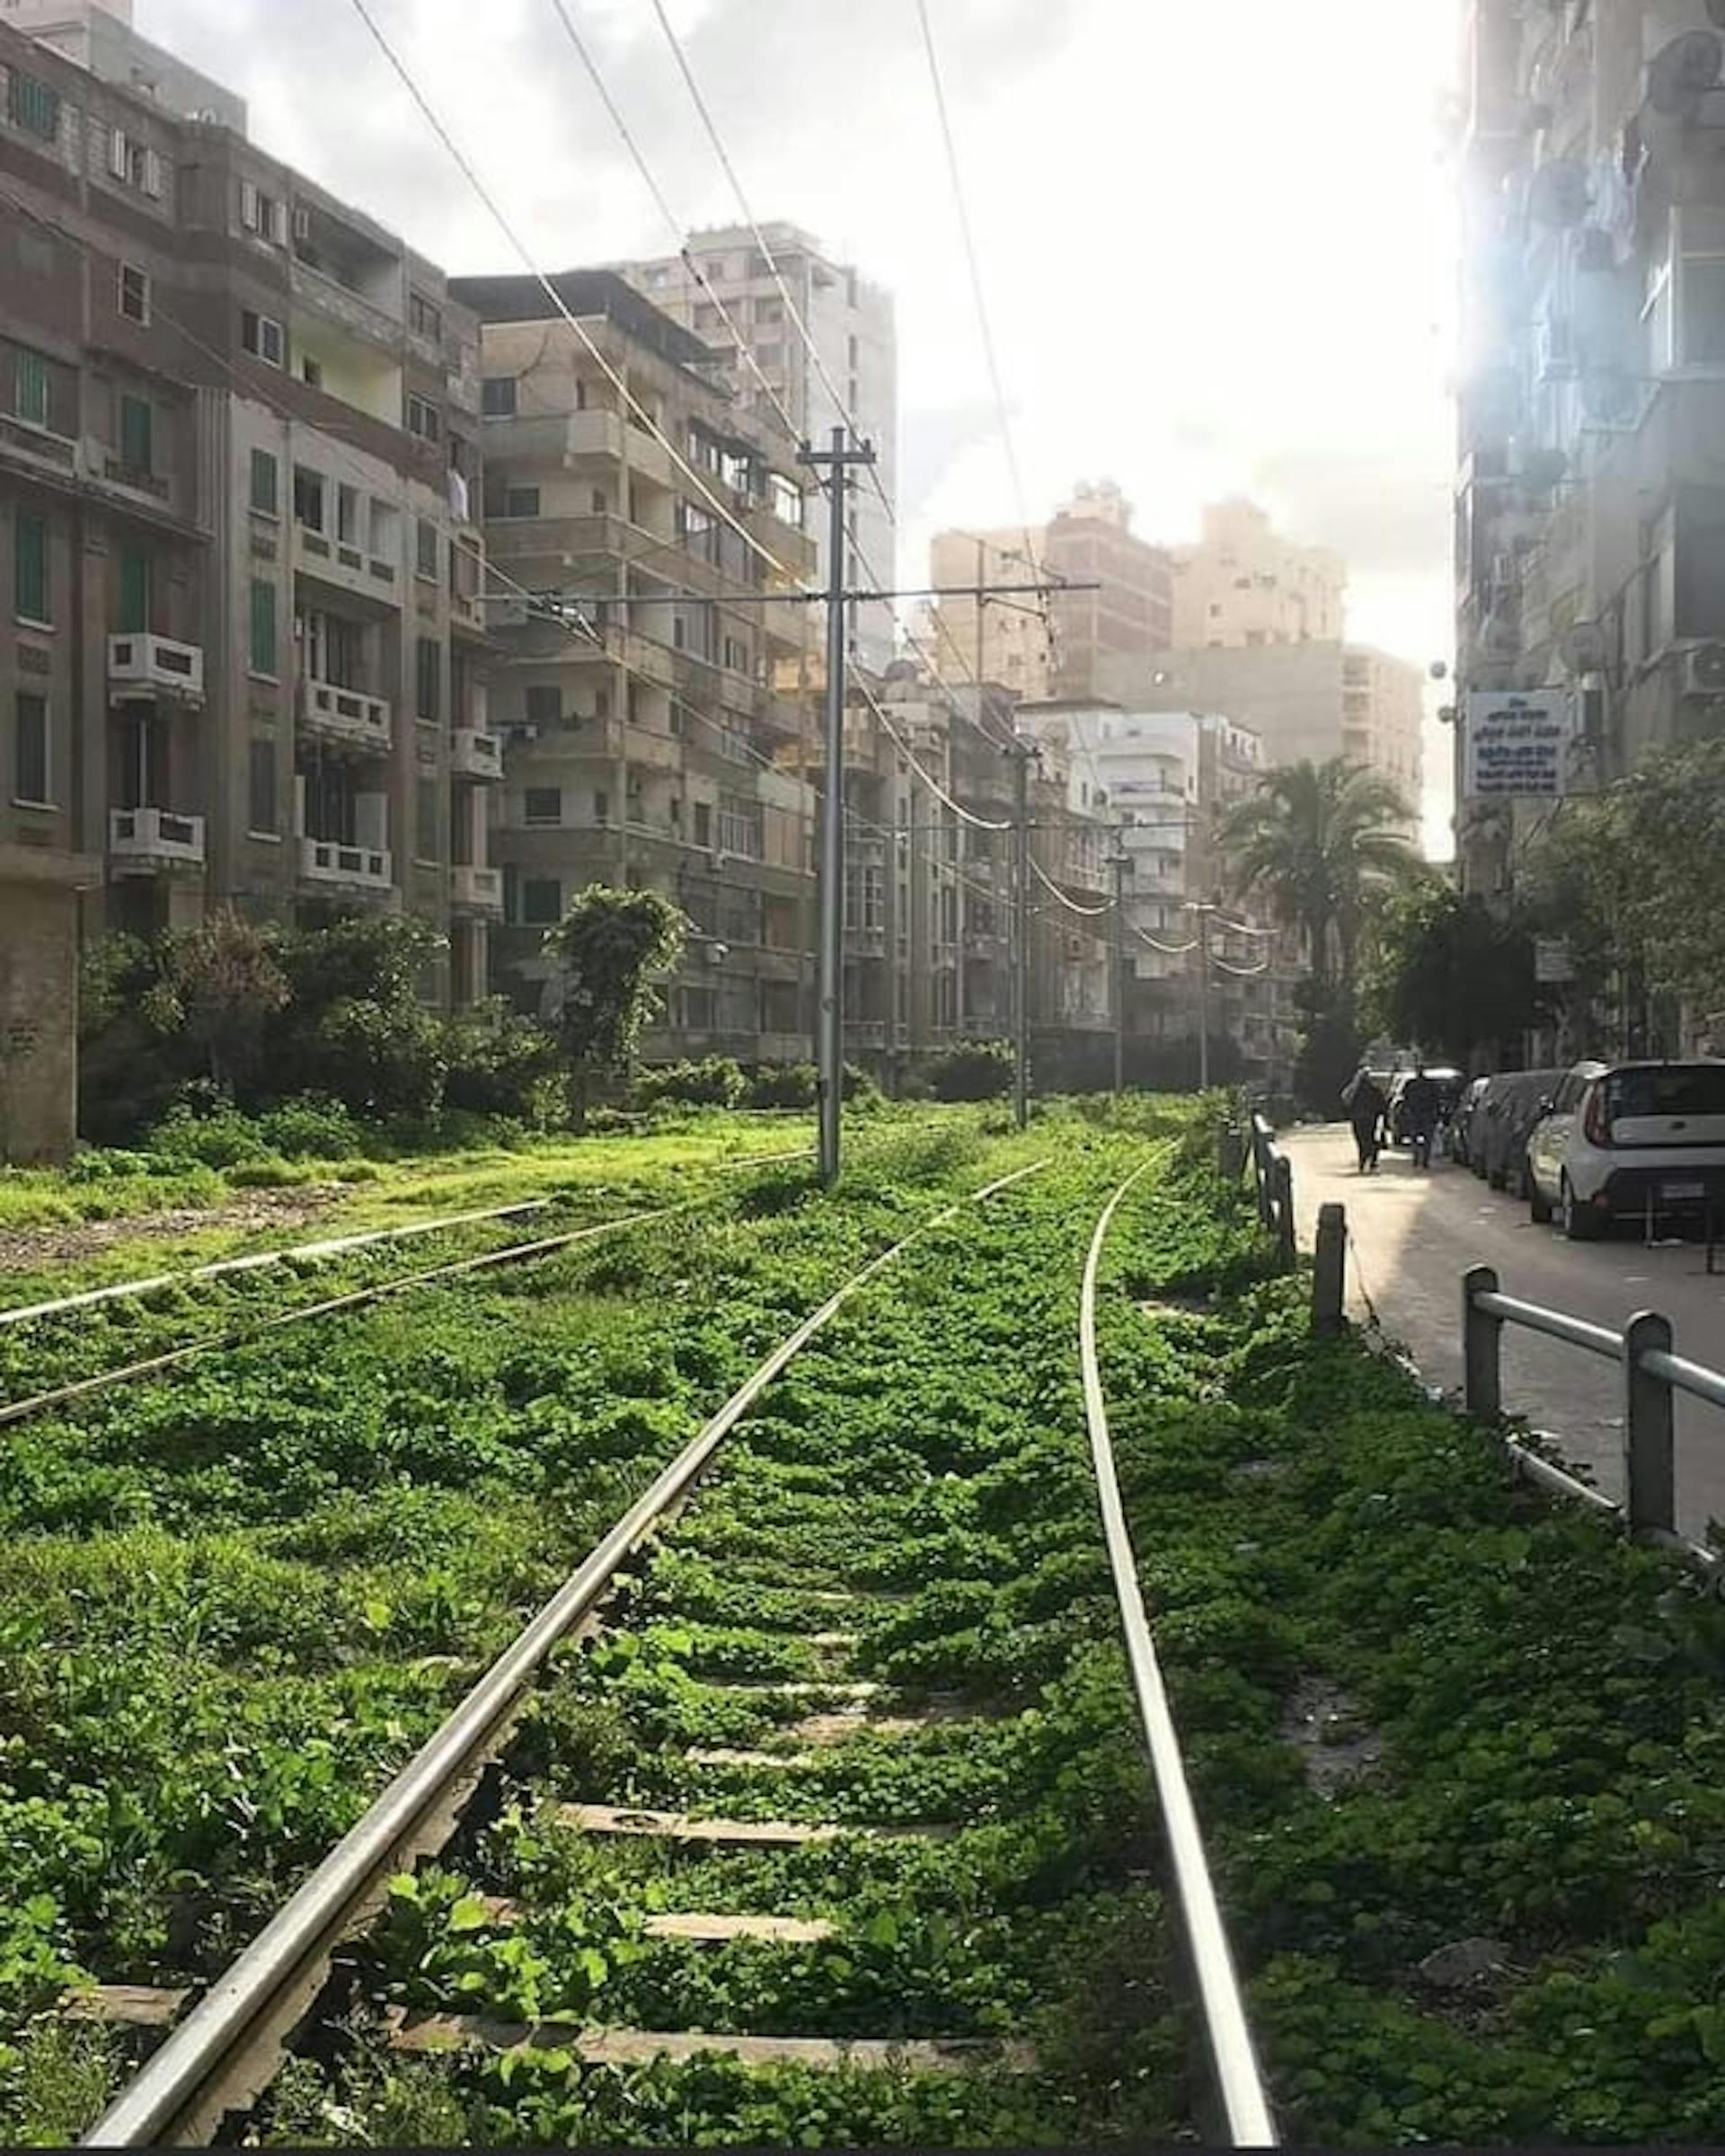 Una vía de tranvía en Alejandría, publicada por u/Different-Giraffe255 en r/Egypt. (https://www.reddit.com/r/Egypt/comments/1152219/a_tram_track_in_alexandria/)